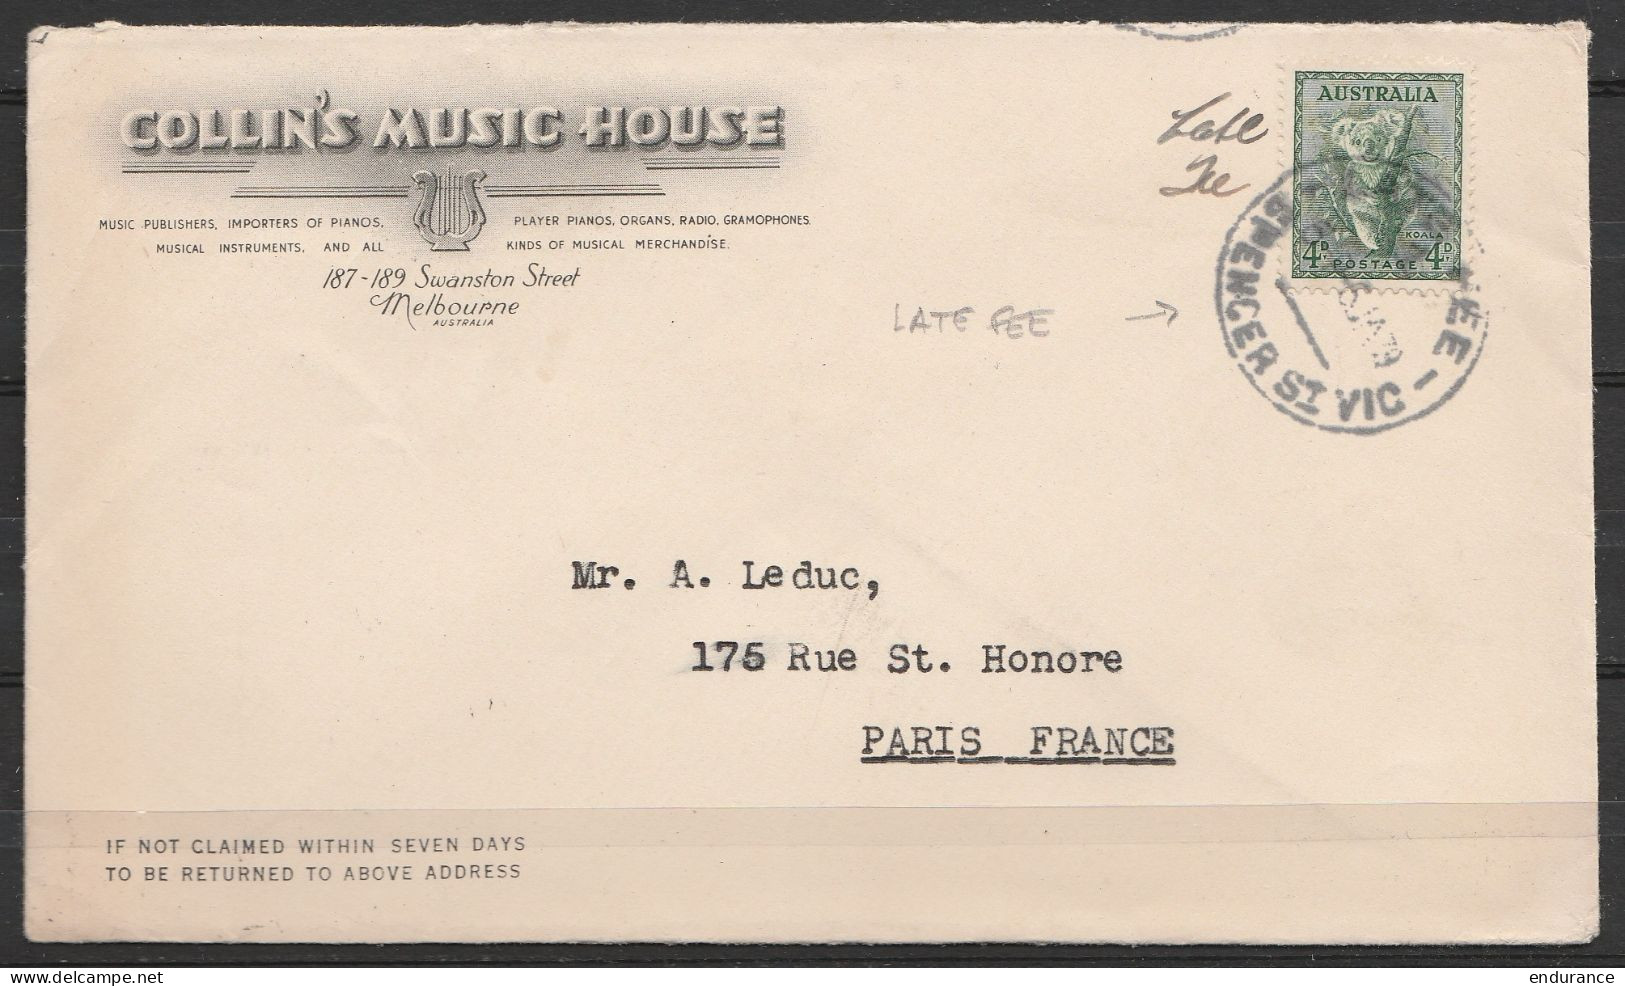 Australie - L. Entête "Collin's Music House" (Melbourne) Affr. 4d Càd "LATE FEE /6 JA 1939" Pour PARIS - Lettres & Documents